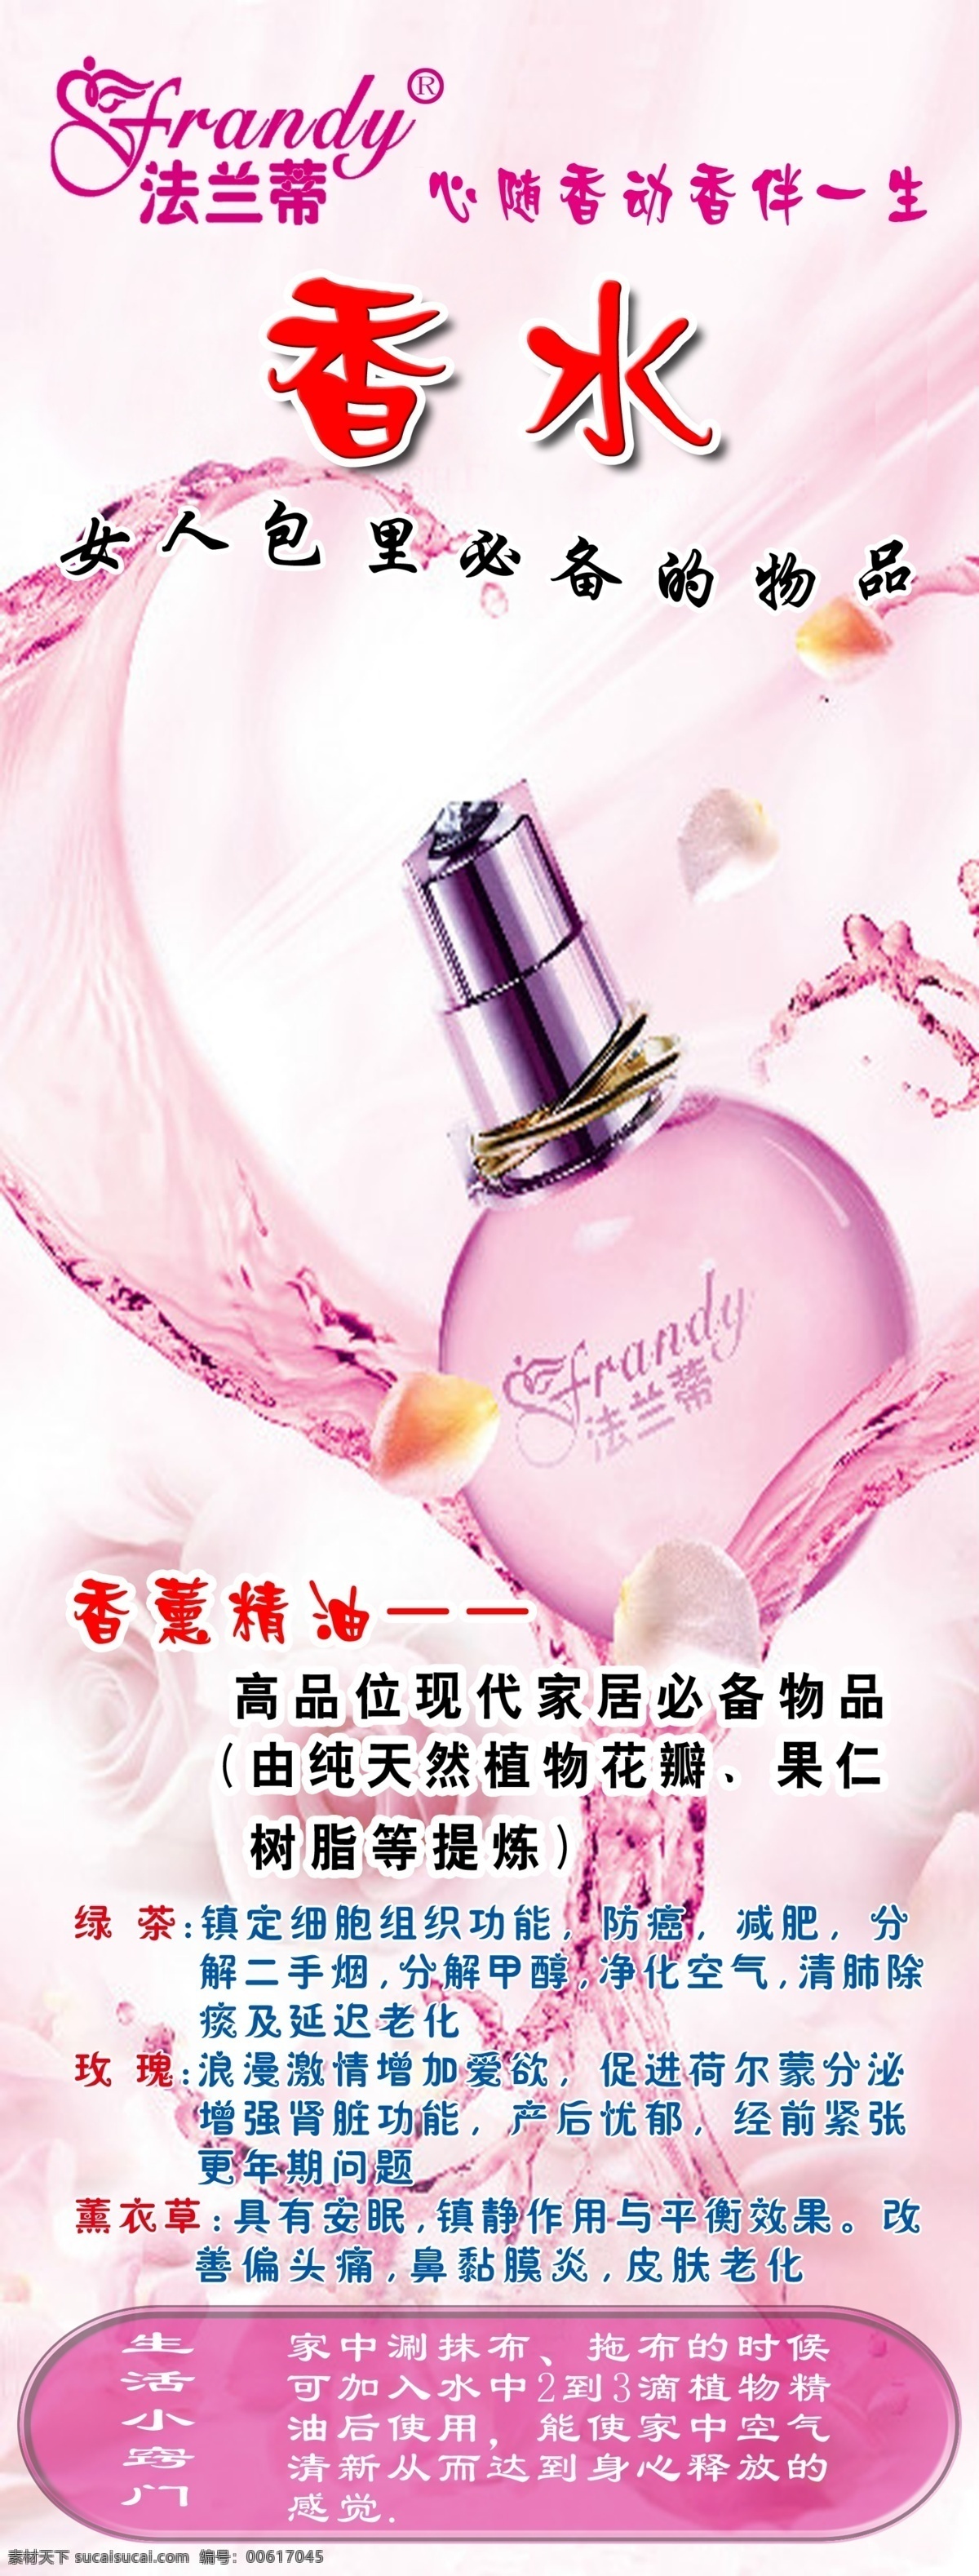 法 兰蒂 香水 展架 粉色 精油 浪漫 甜蜜 logo 展板 易拉宝设计